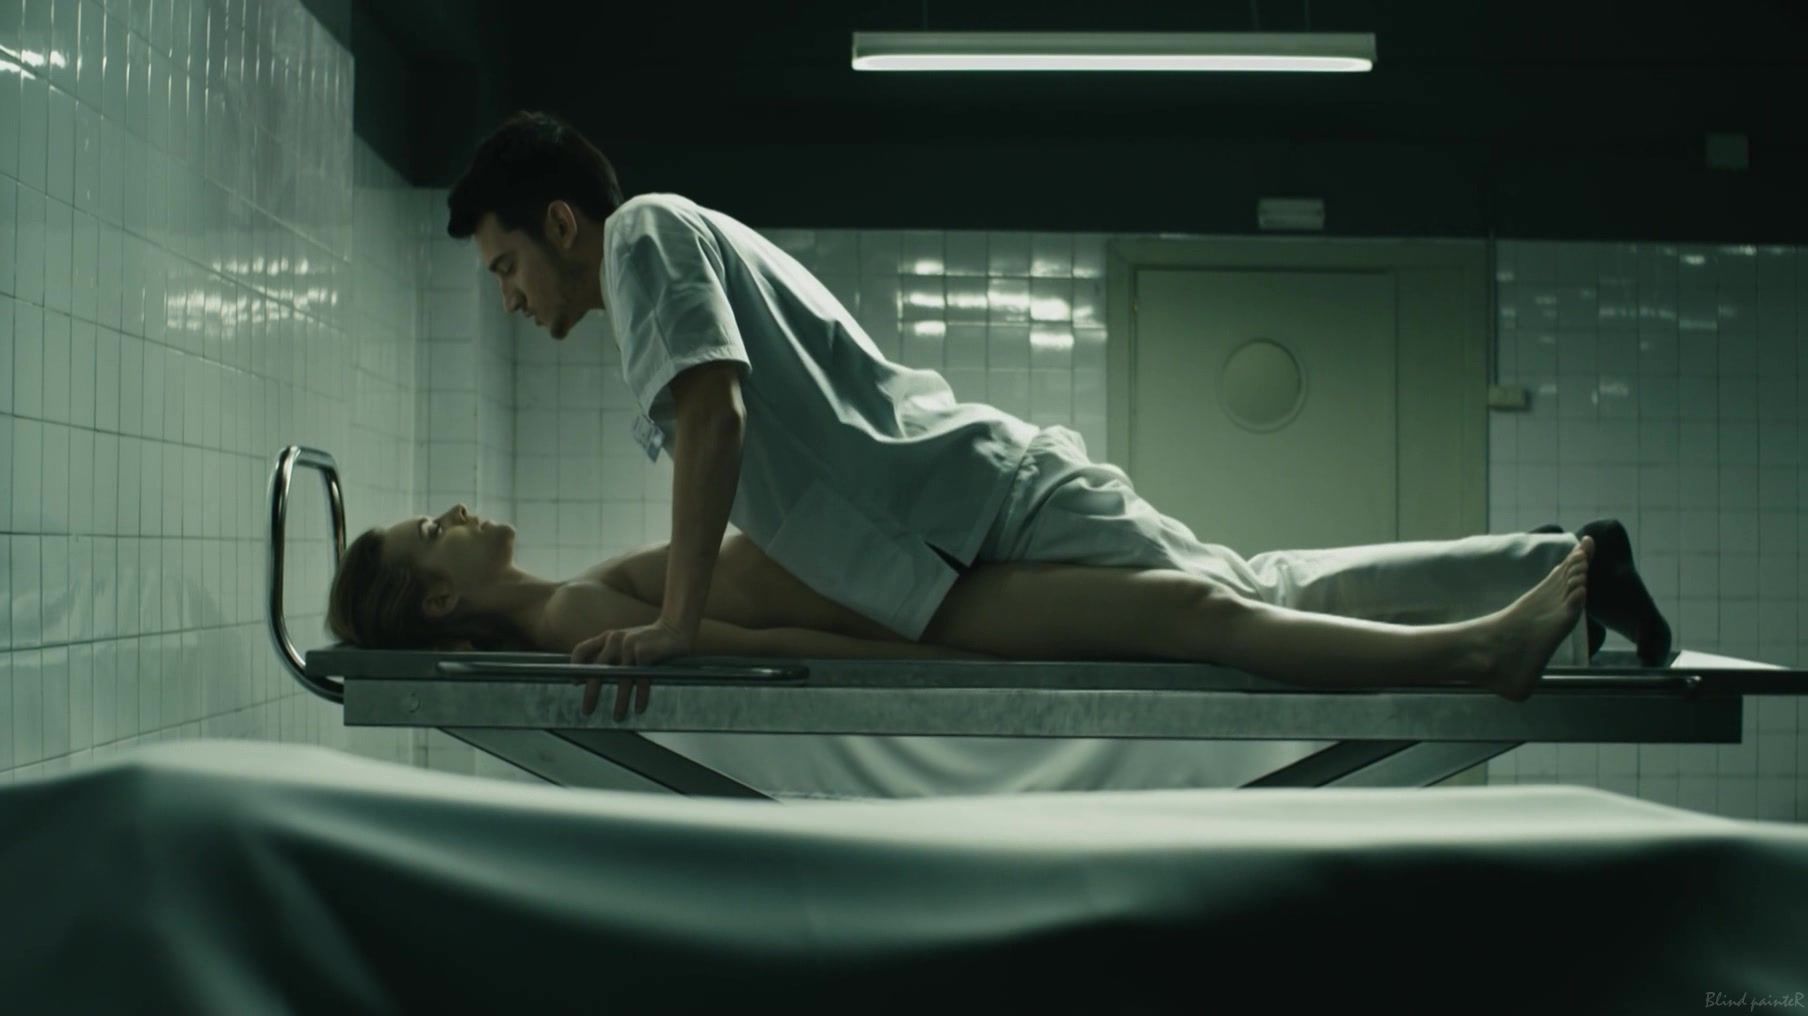 Tgirl Alba Ribas nude - El cadaver de Anna Fritz (2015) BestSexWebcam - 1